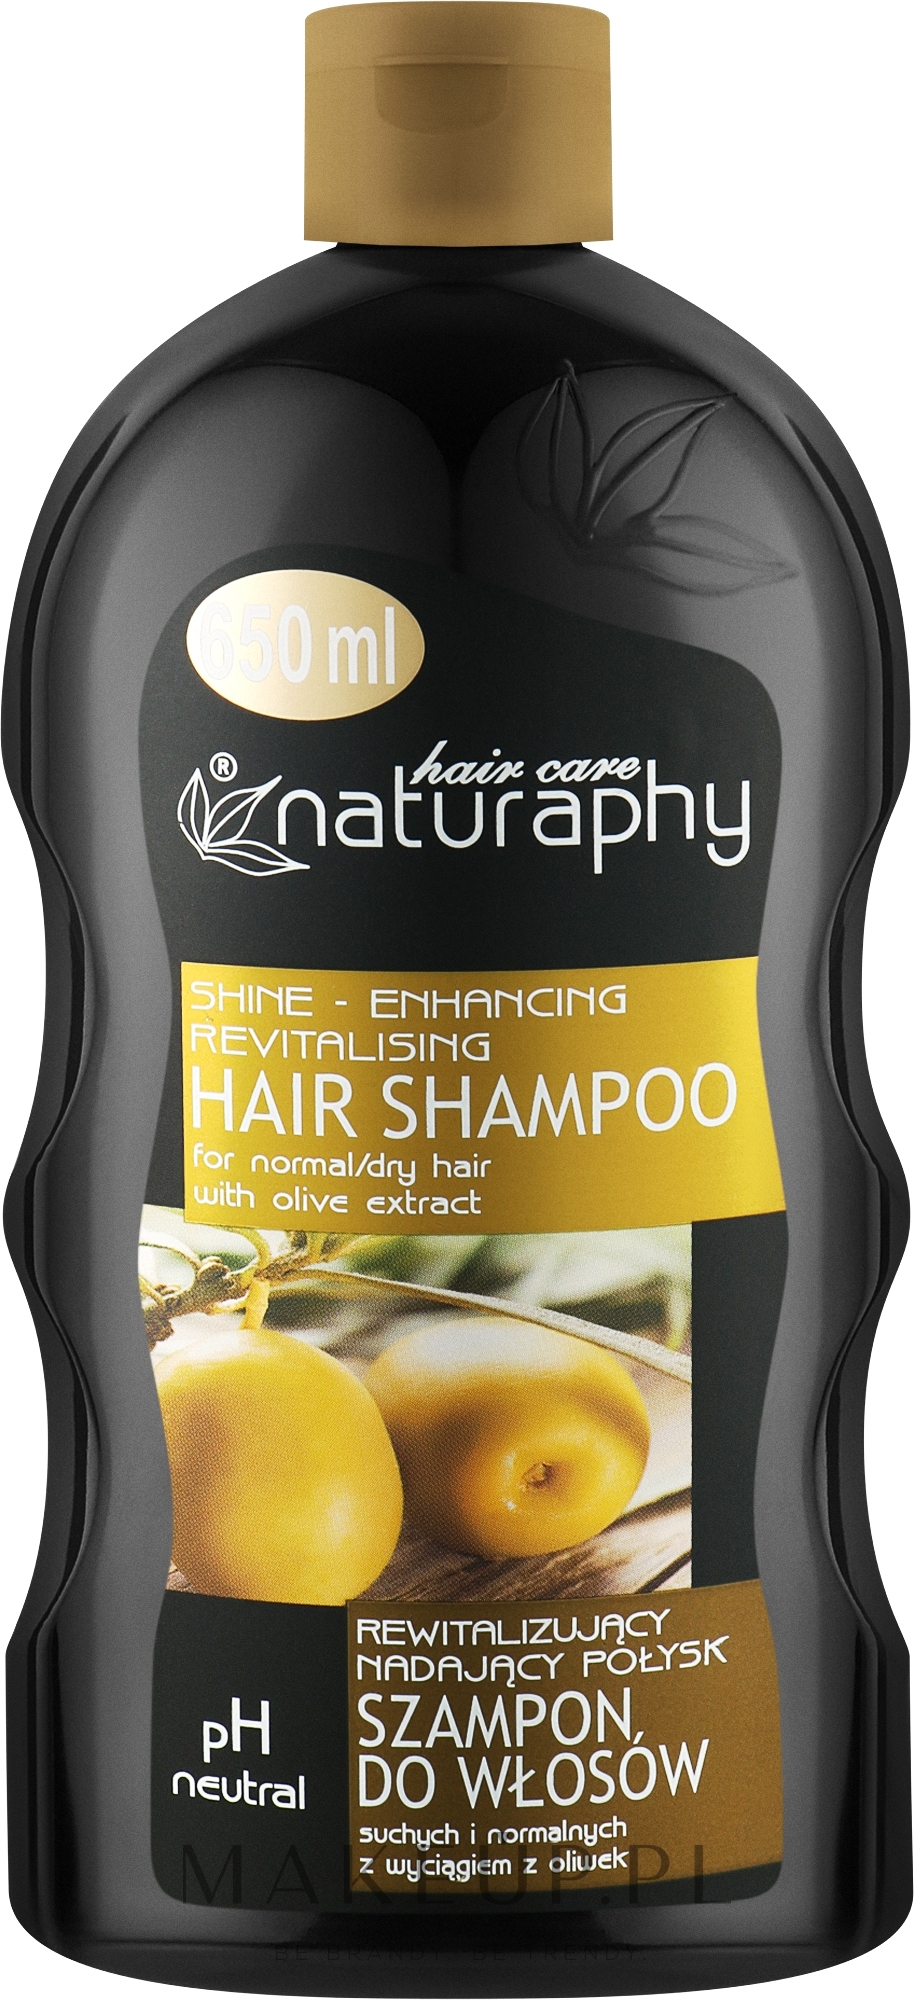 Rewitalizujący i nadający połysk szampon do włosów suchych i normalnych z wyciągiem z oliwek - Naturaphy — Zdjęcie 650 ml